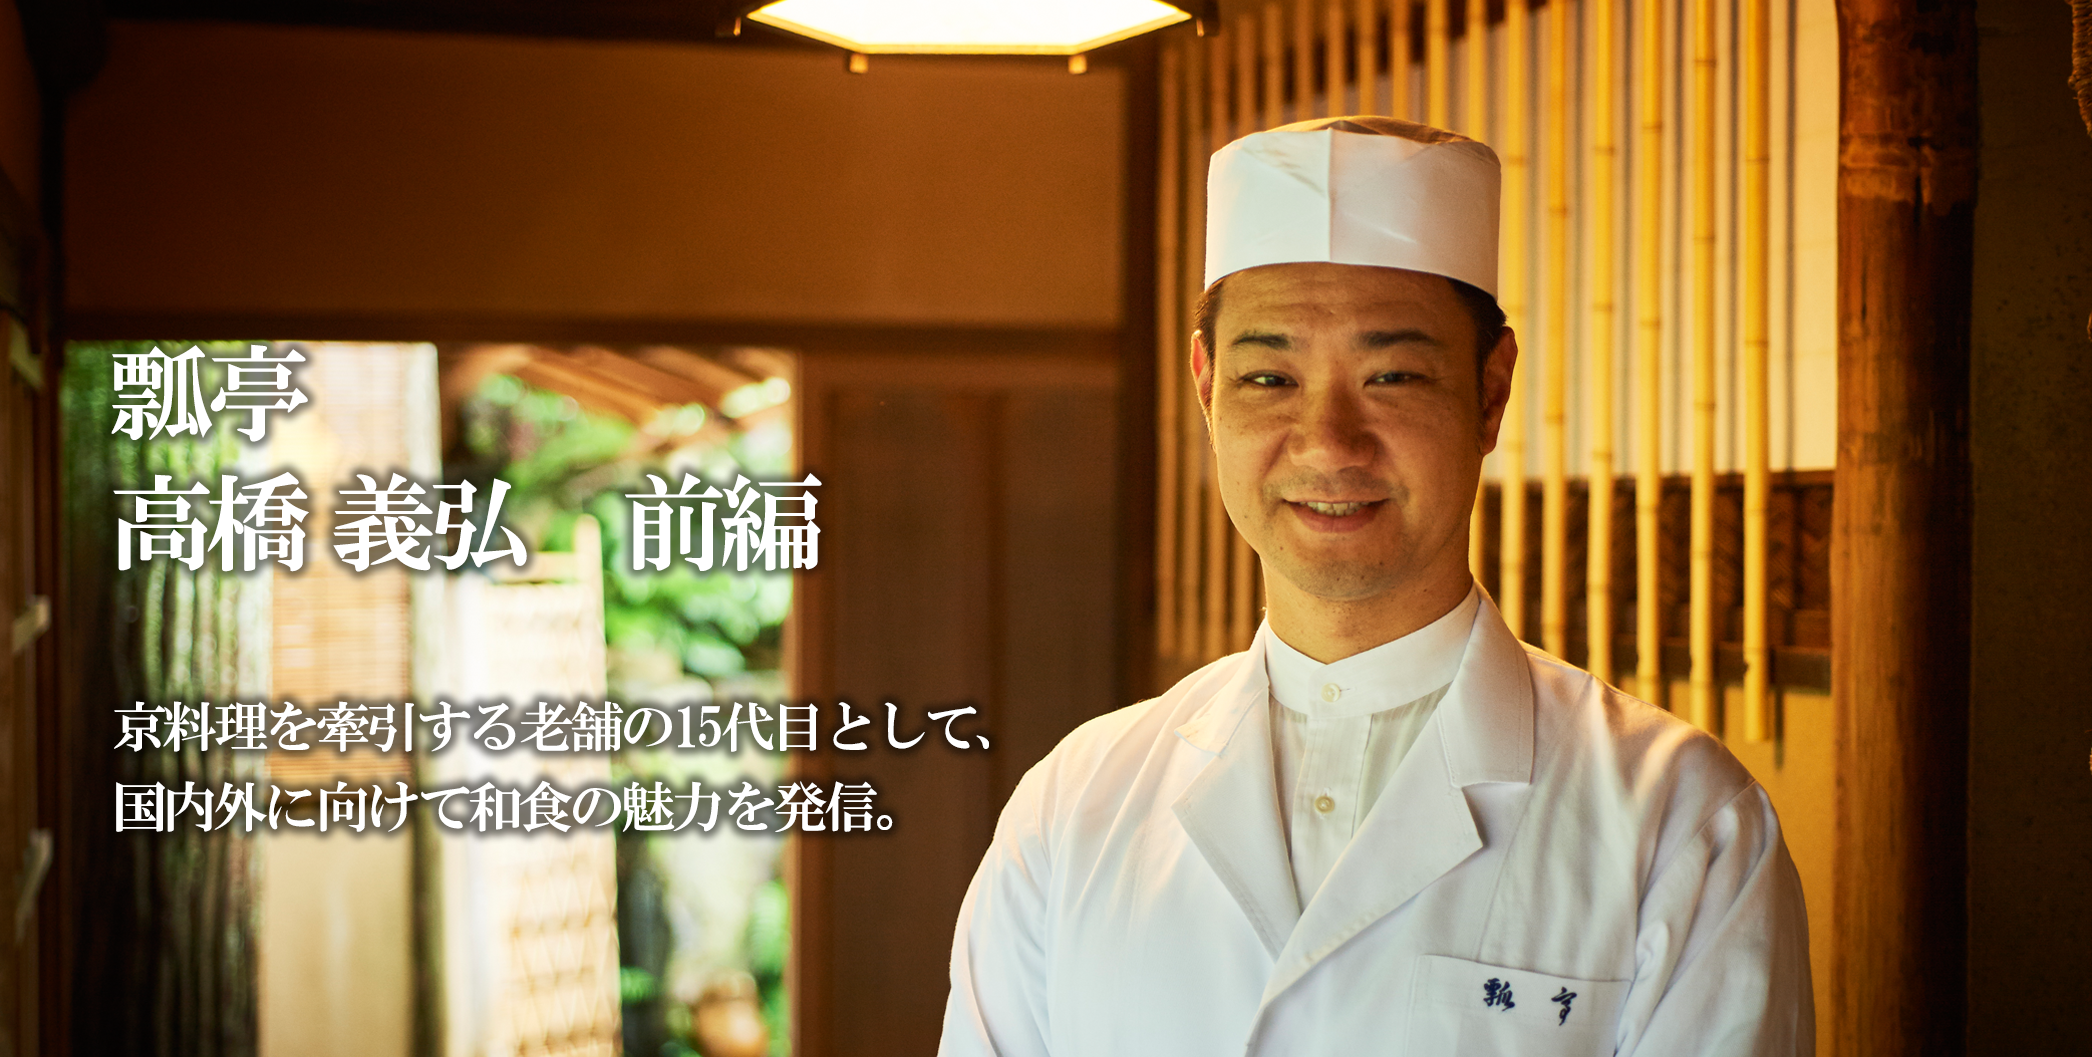 榎本 彬+41 / shop_name22 京料理を牽引する老舗の15代目として、 国内外に向けて和食の魅力を発信。